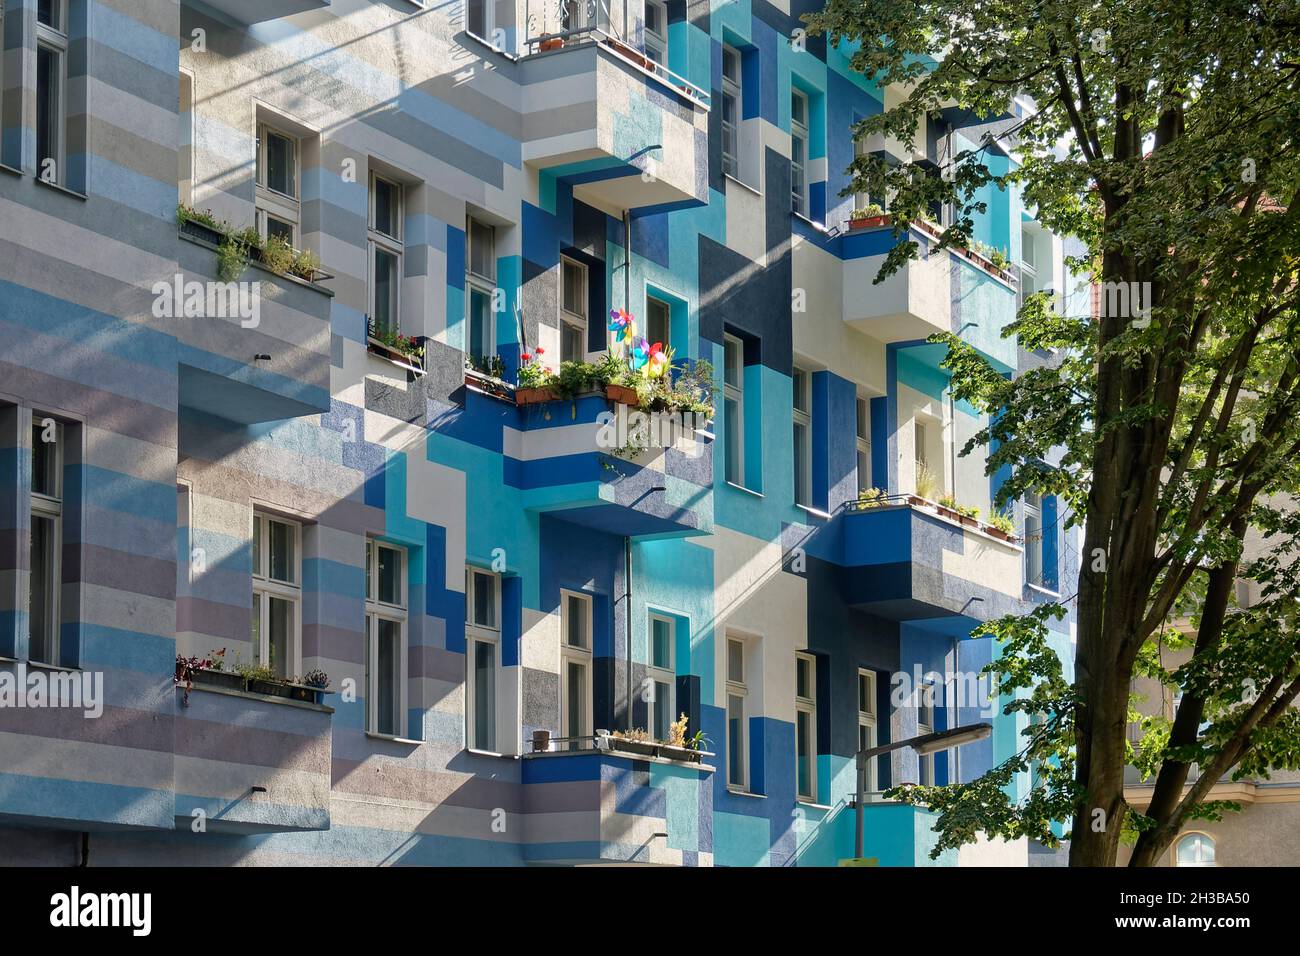 Farbige Altbaufassade, Sanierter Altbau, Real Estate, Mietwohnungen, Balkone, Immobilien, Berlin, Neukölln Stock Photo